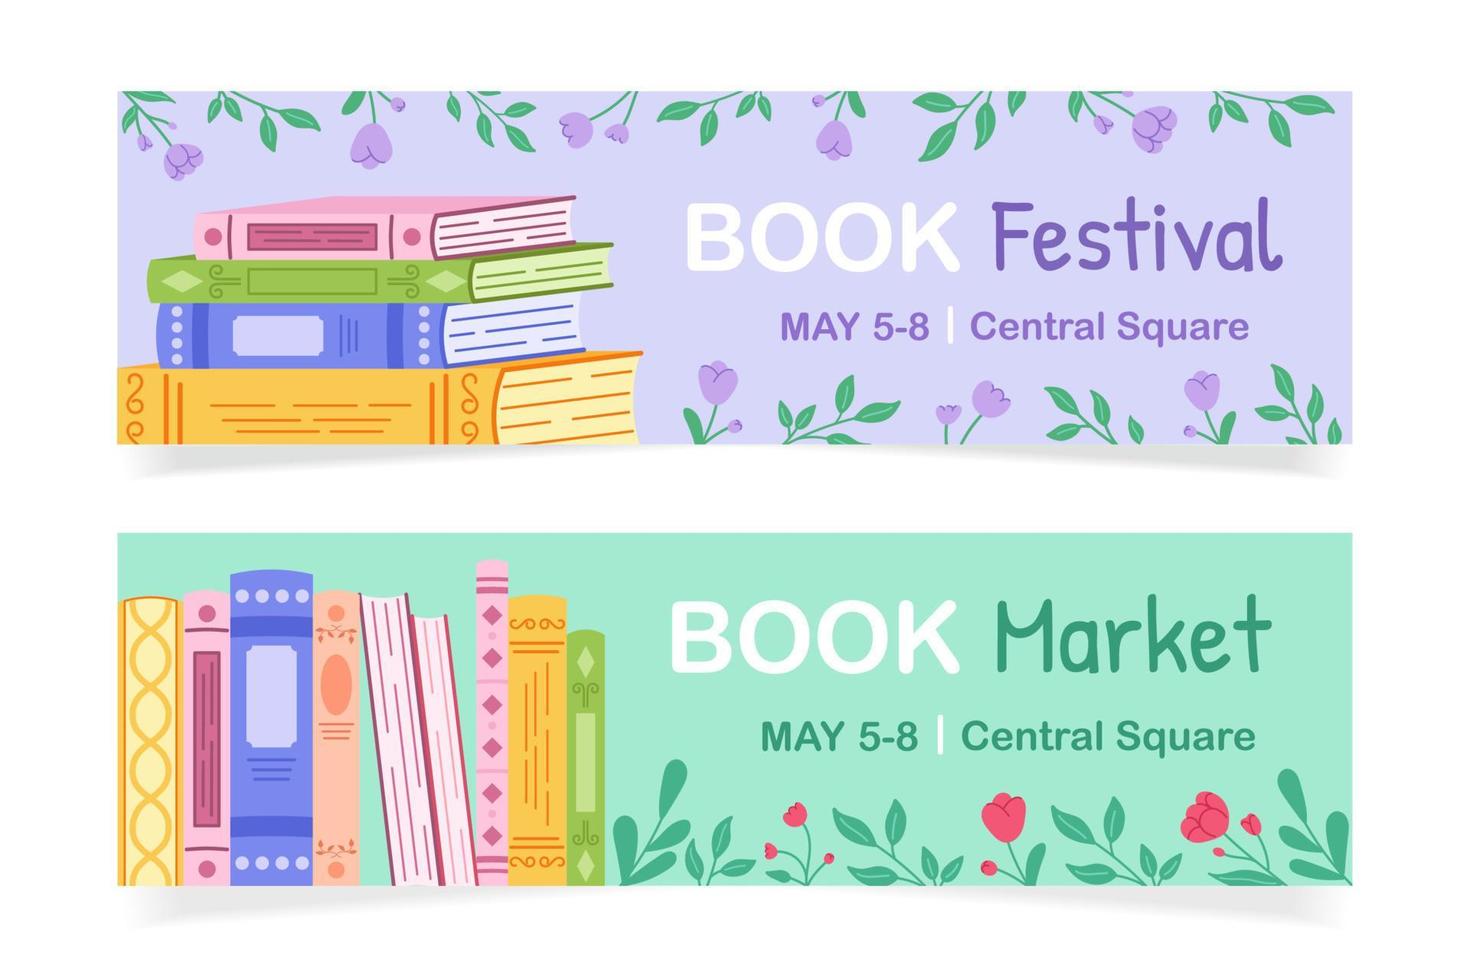 conjunto do modelos para publicidade livro evento. horizontal fundo com flores e livros para publicidade a livro festival, justo, oferta. vetor